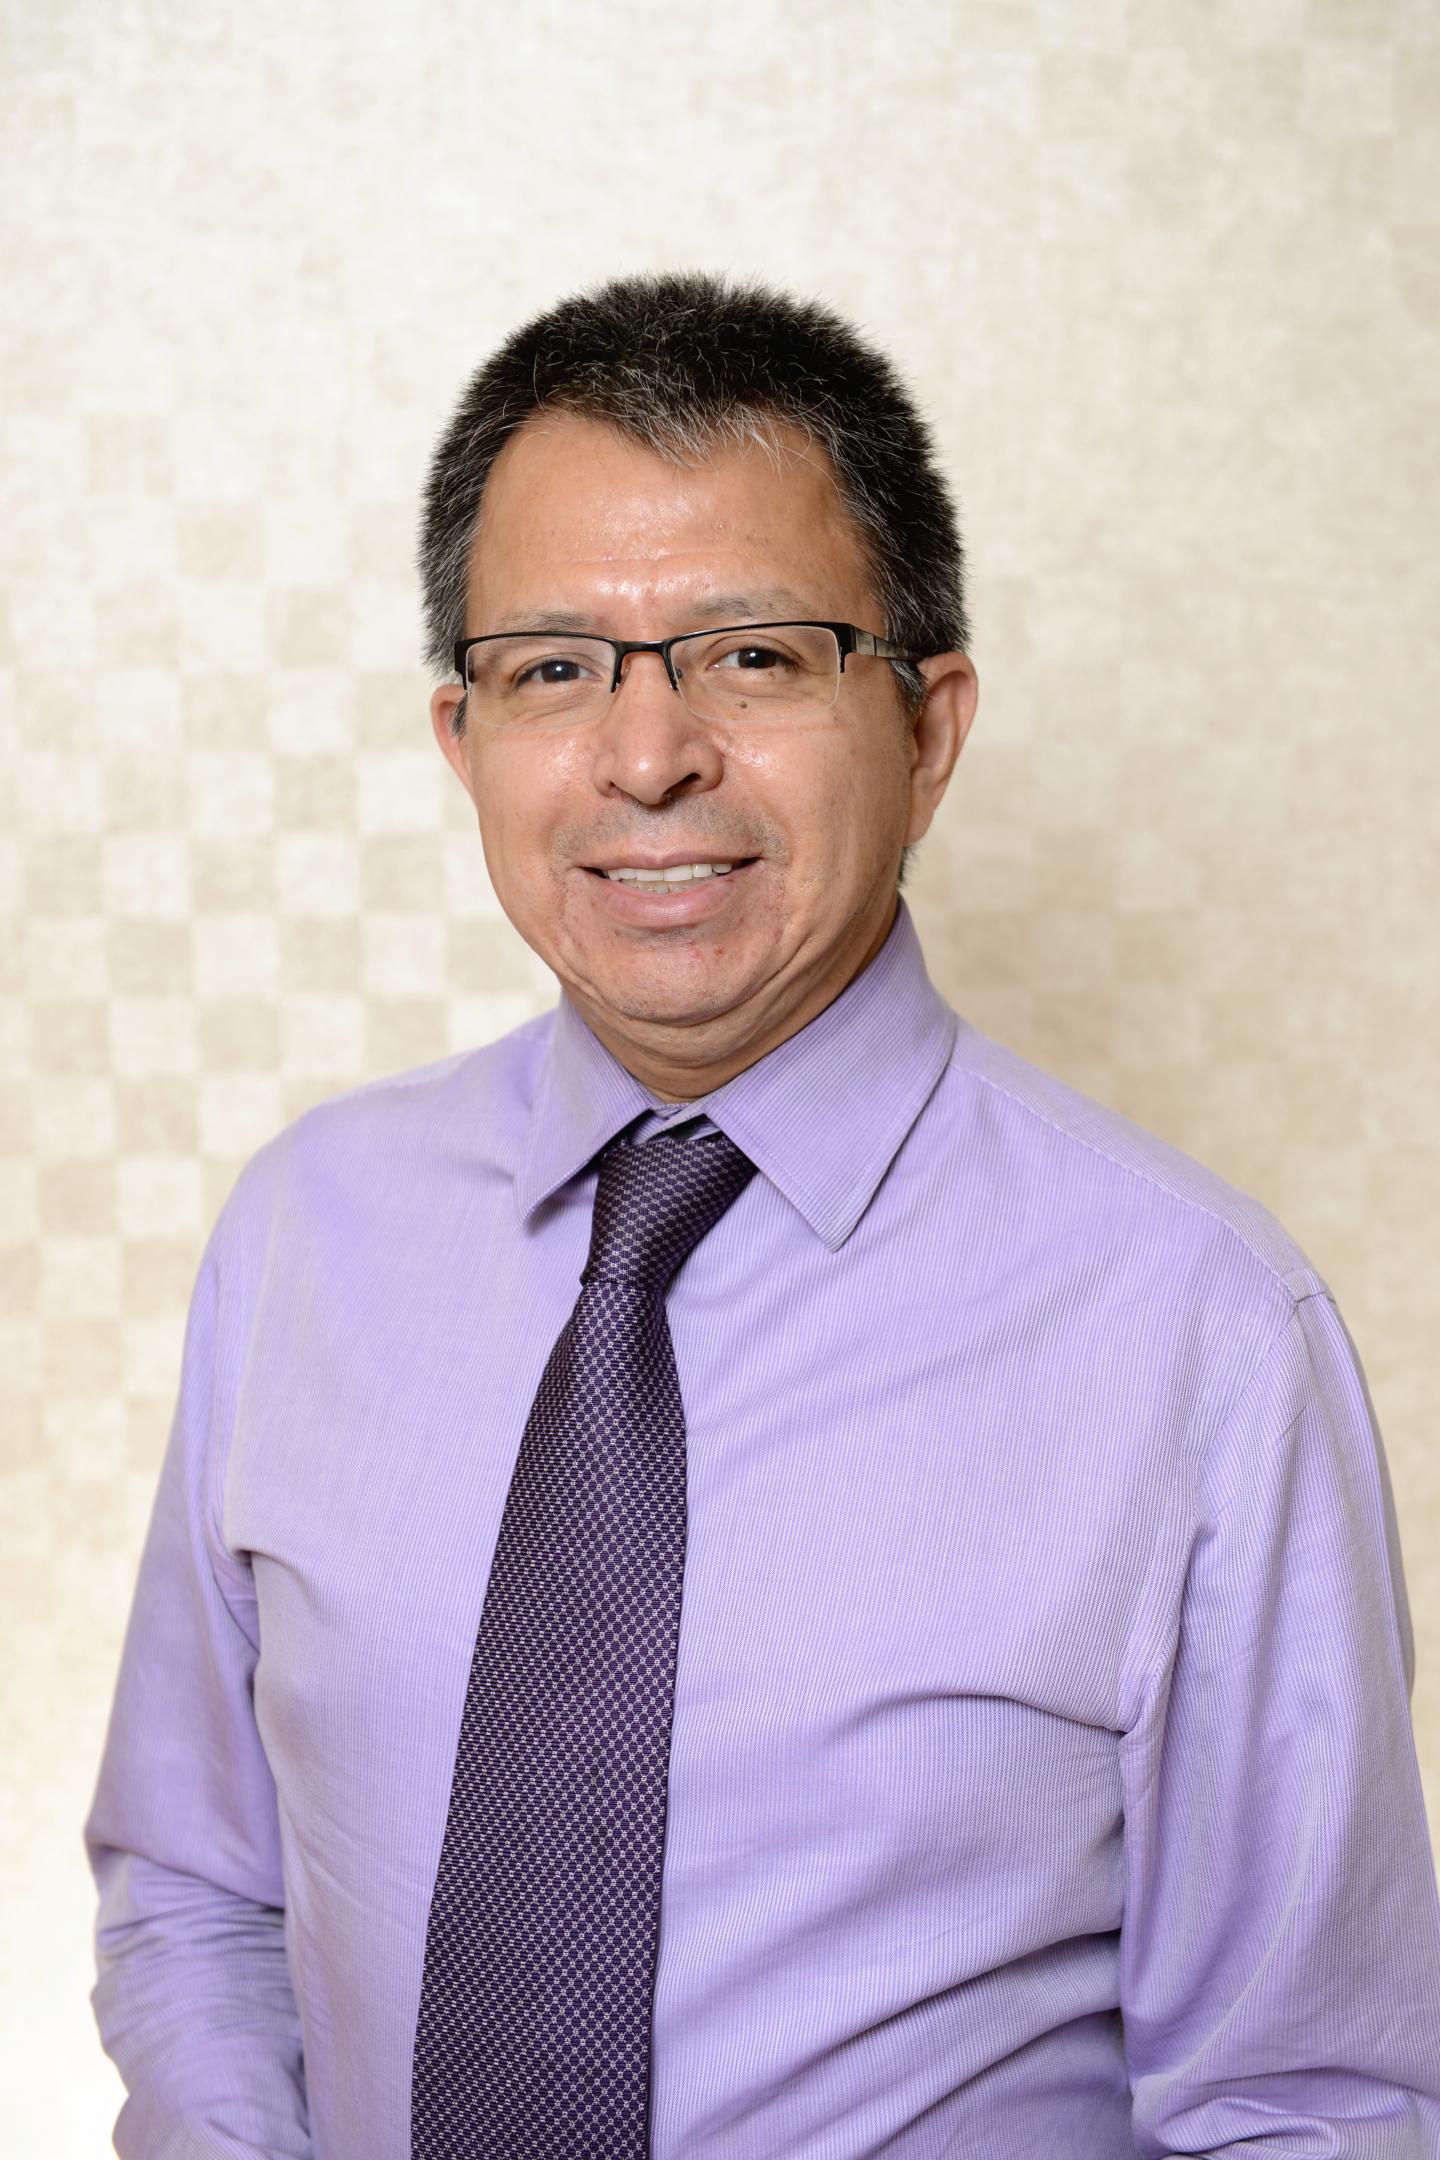 Dr. Sergio Huerta, UT Southwestern Medical Center